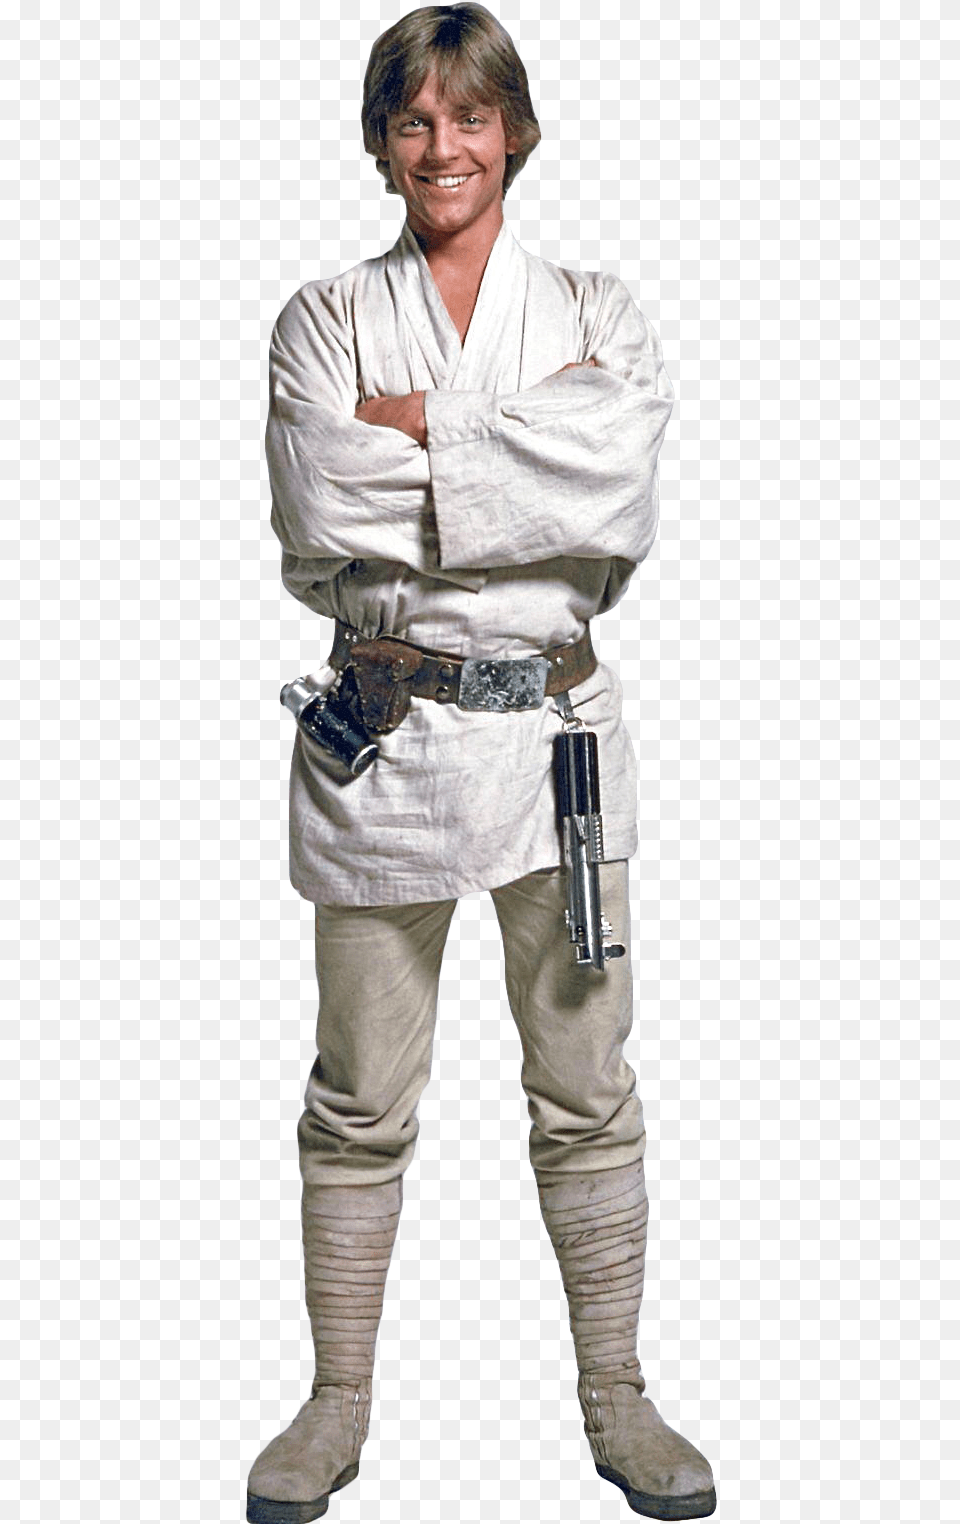 Luke Skywalker Transparent Luke Skywalker Transparent Background, Weapon, Clothing, Costume, Person Png Image